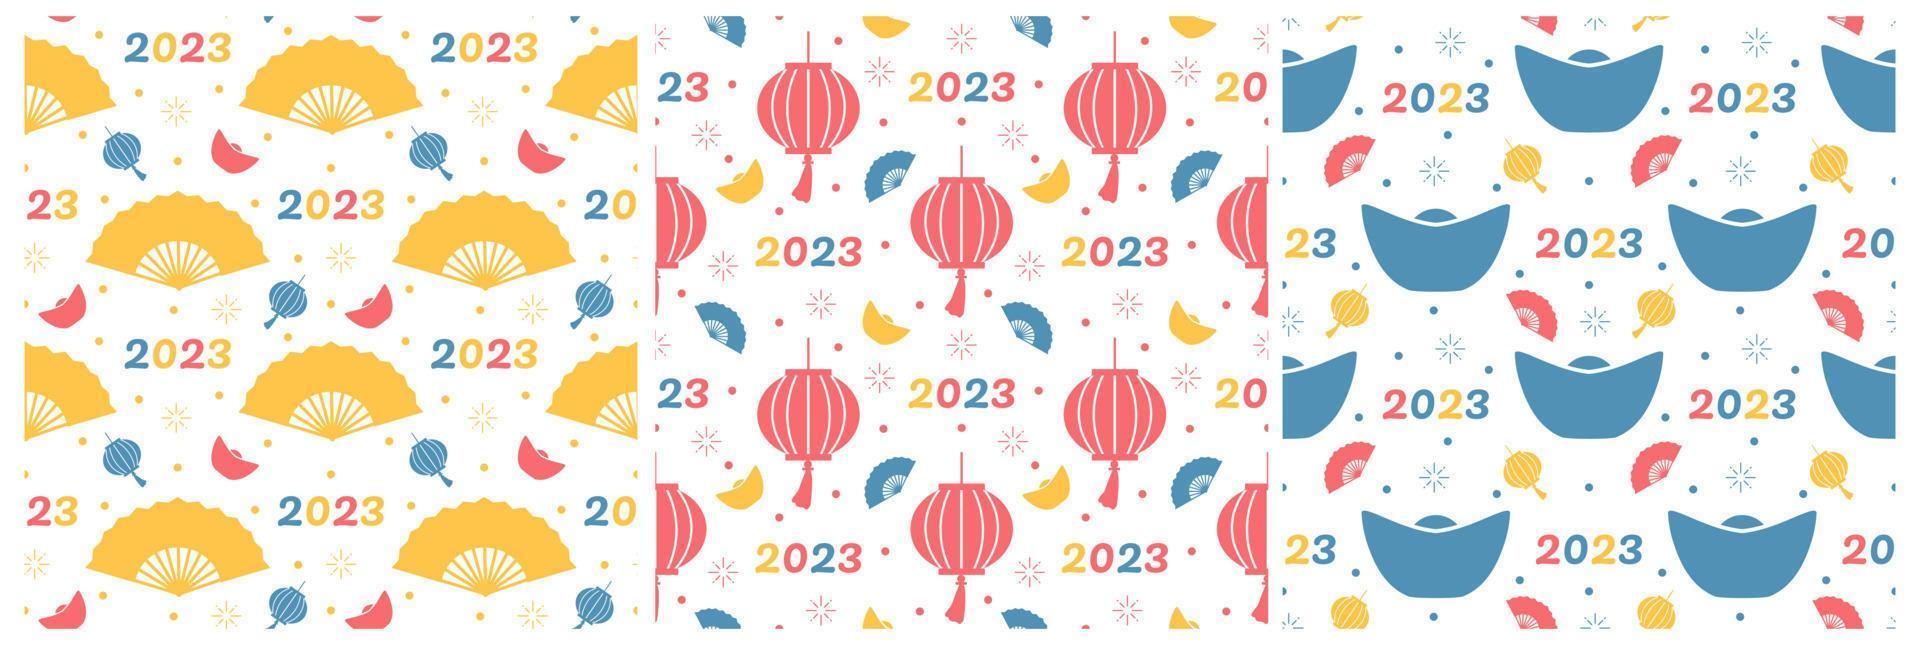 conjunto de ano novo lunar chinês 2023 dias modelo de decoração padrão sem costura ilustração plana de desenhos animados desenhados à mão vetor